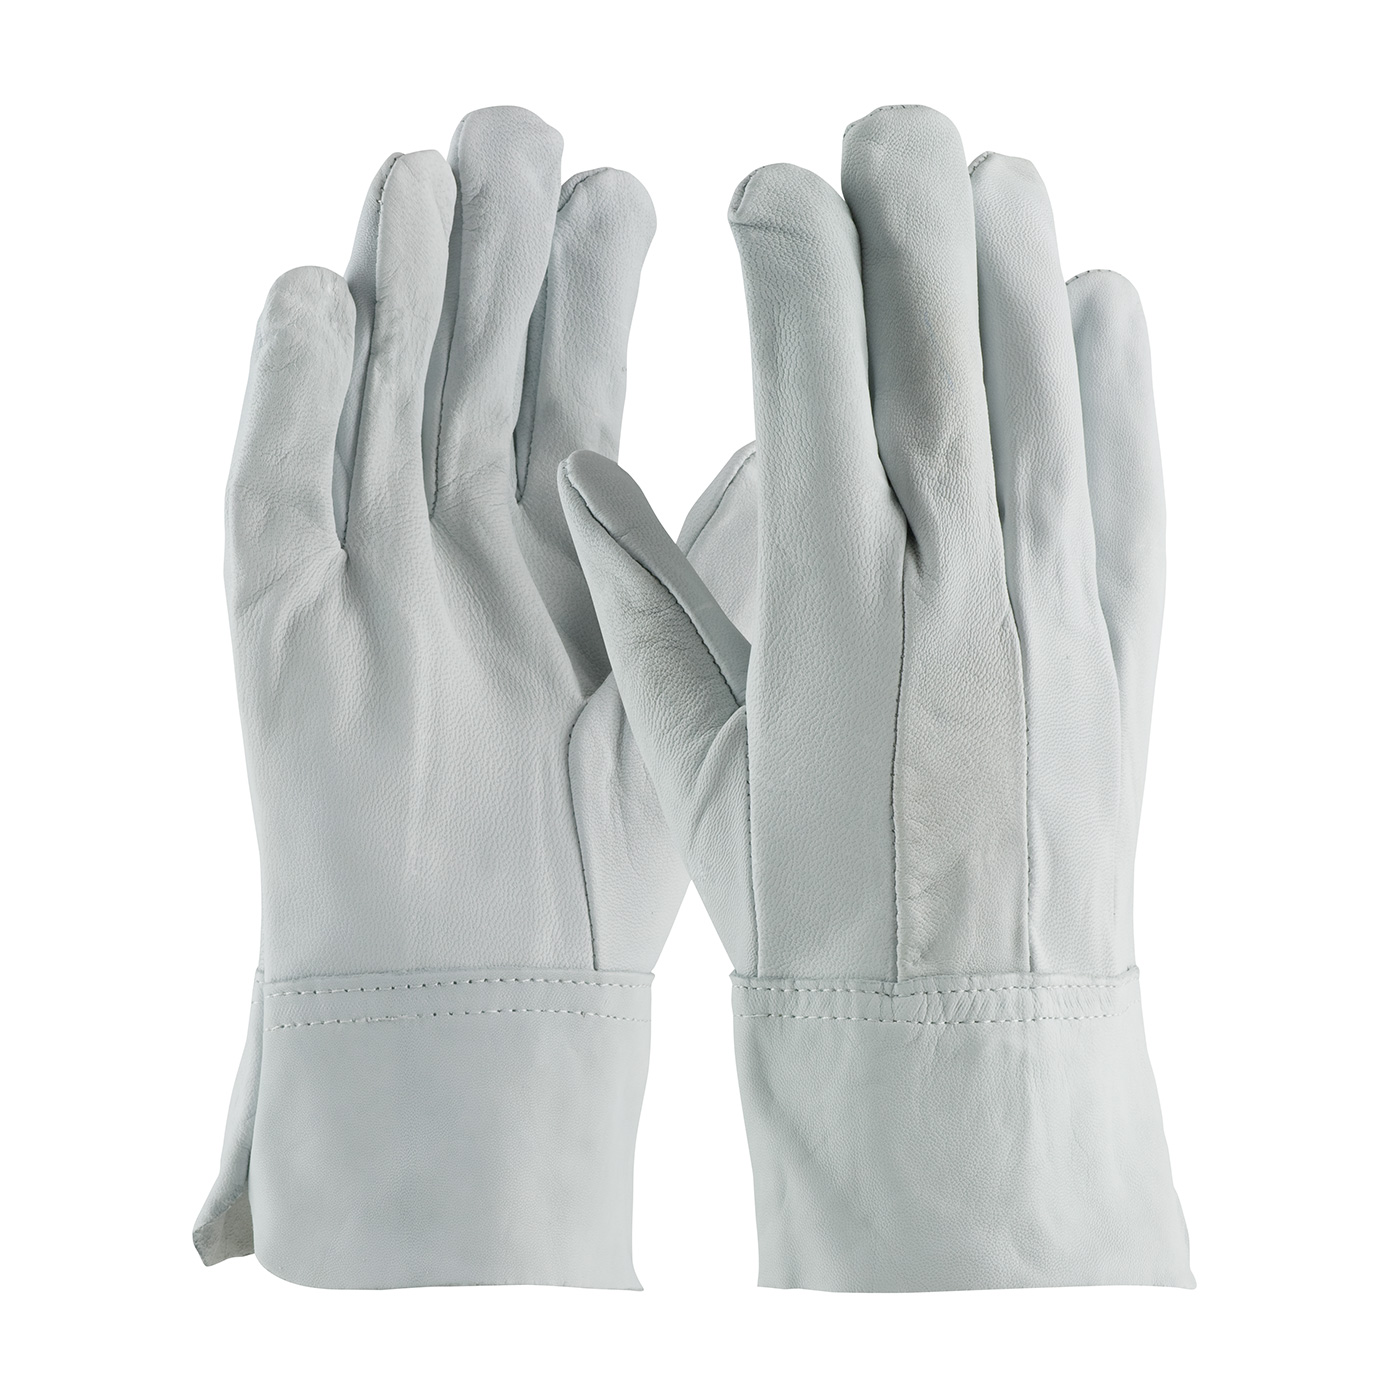 Argon arc MIG Welding Glove Grain Goat Skin Leather TIG Welder Gloves 